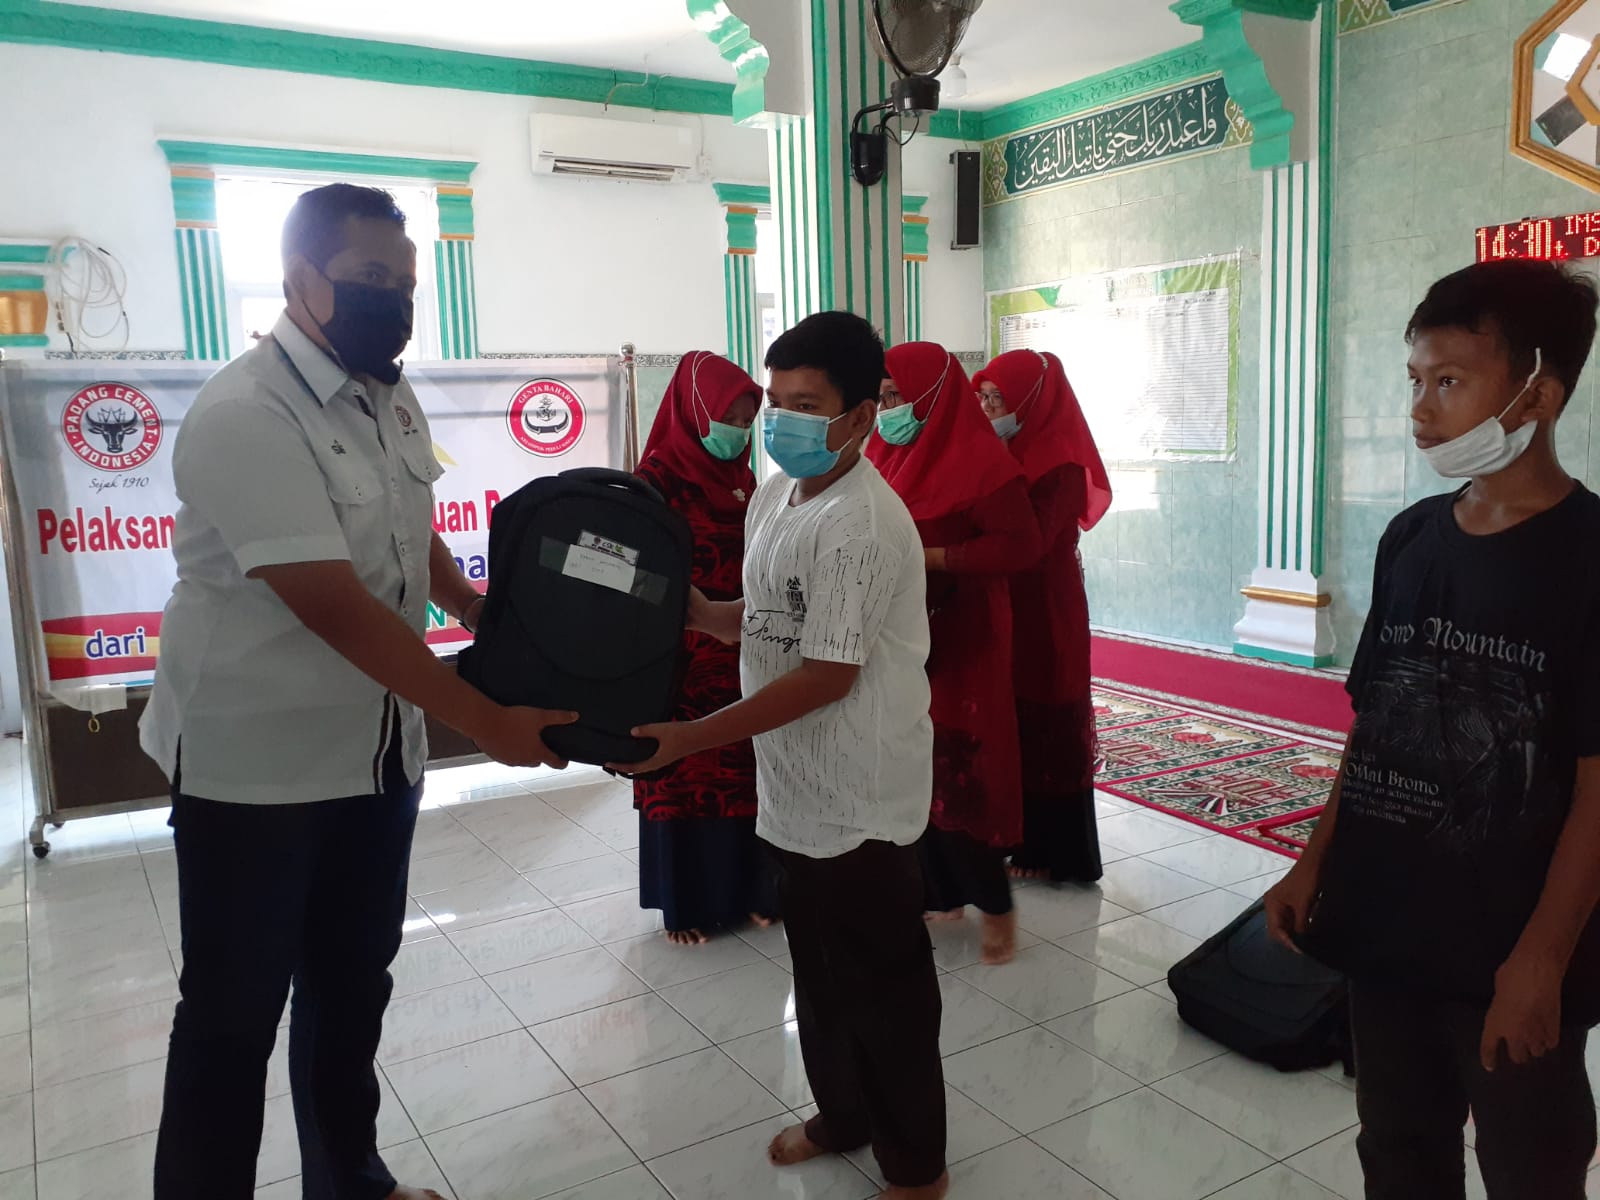 Bantuan paket pendidikan buku, tas dan seragam sekolah untuk pelajar setingkat SMP, diserahkan oleh PT Semen Padang bekerjasama dengan Kelompok Peduli Sosial (KPS) Genta Bahari di Masjid Raya Teluk Bayur.